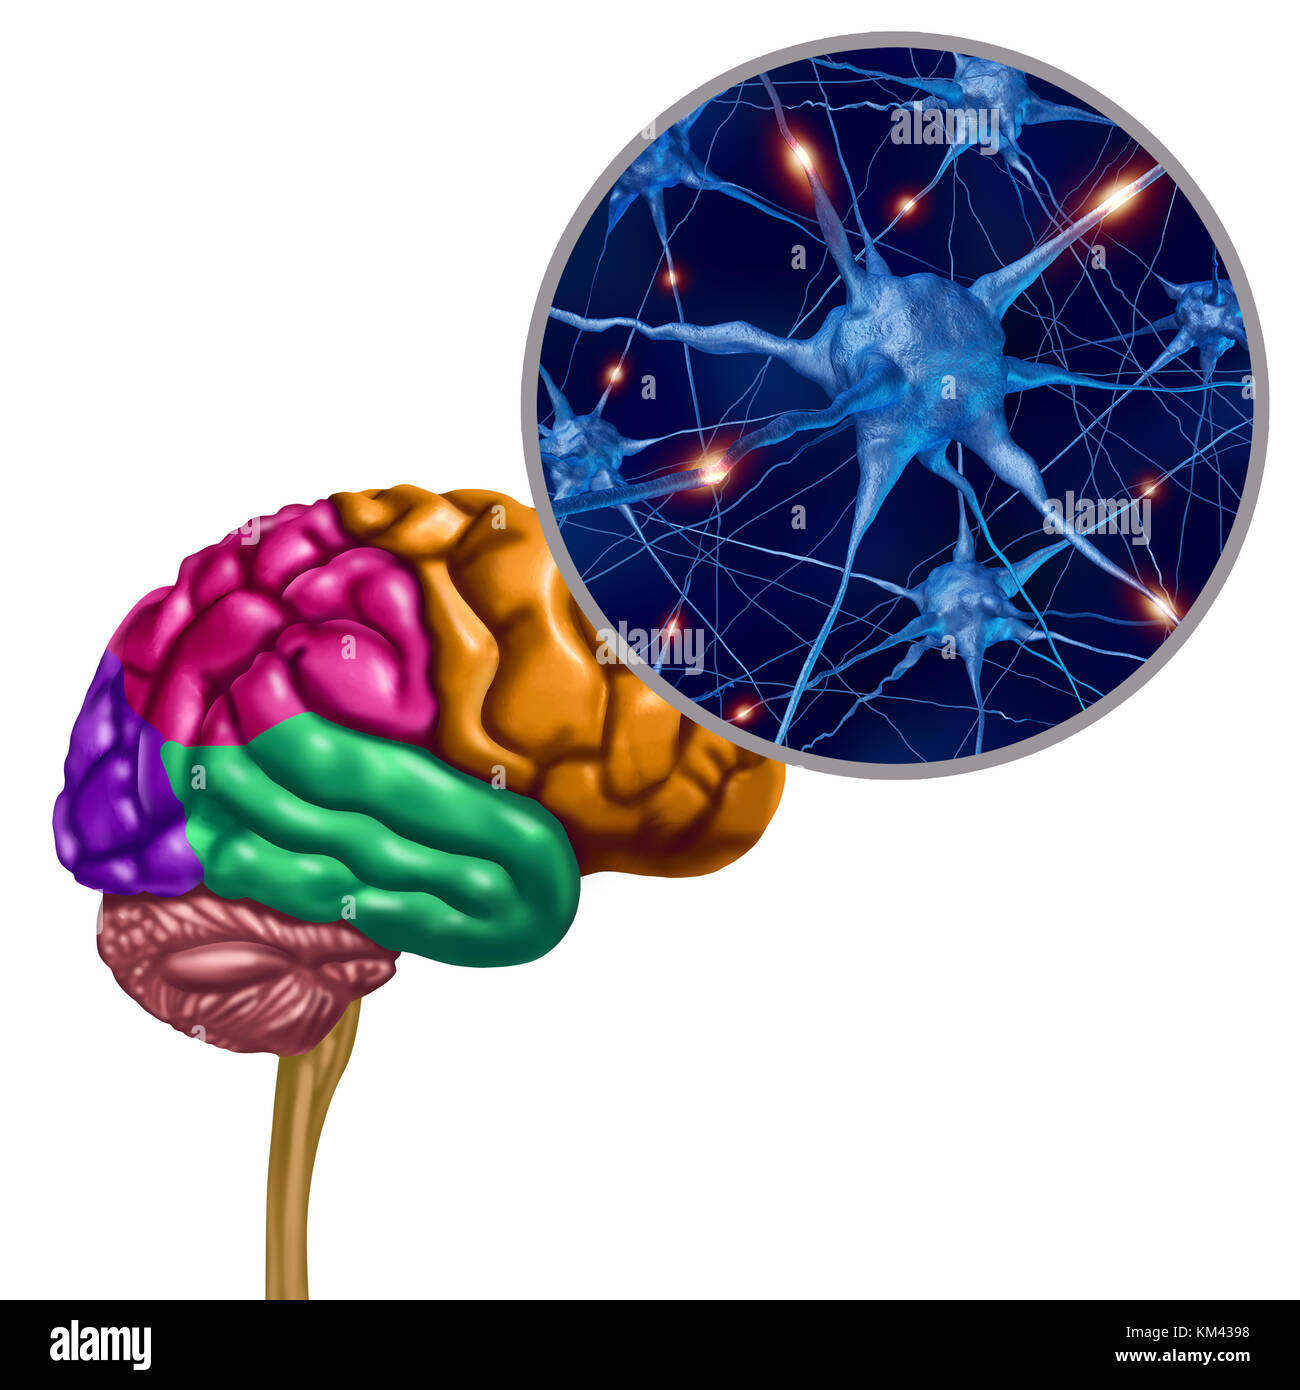 Hirnlappenaktive Neuronen als menschliches denkendes ogan mit Neuronenvergrößerung mit 3D-Illustrationselementen. Stockfoto